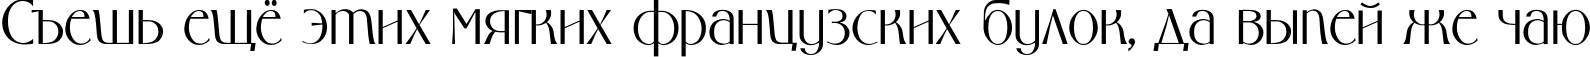 Пример написания шрифтом MiddlLight TYGRA текста на русском